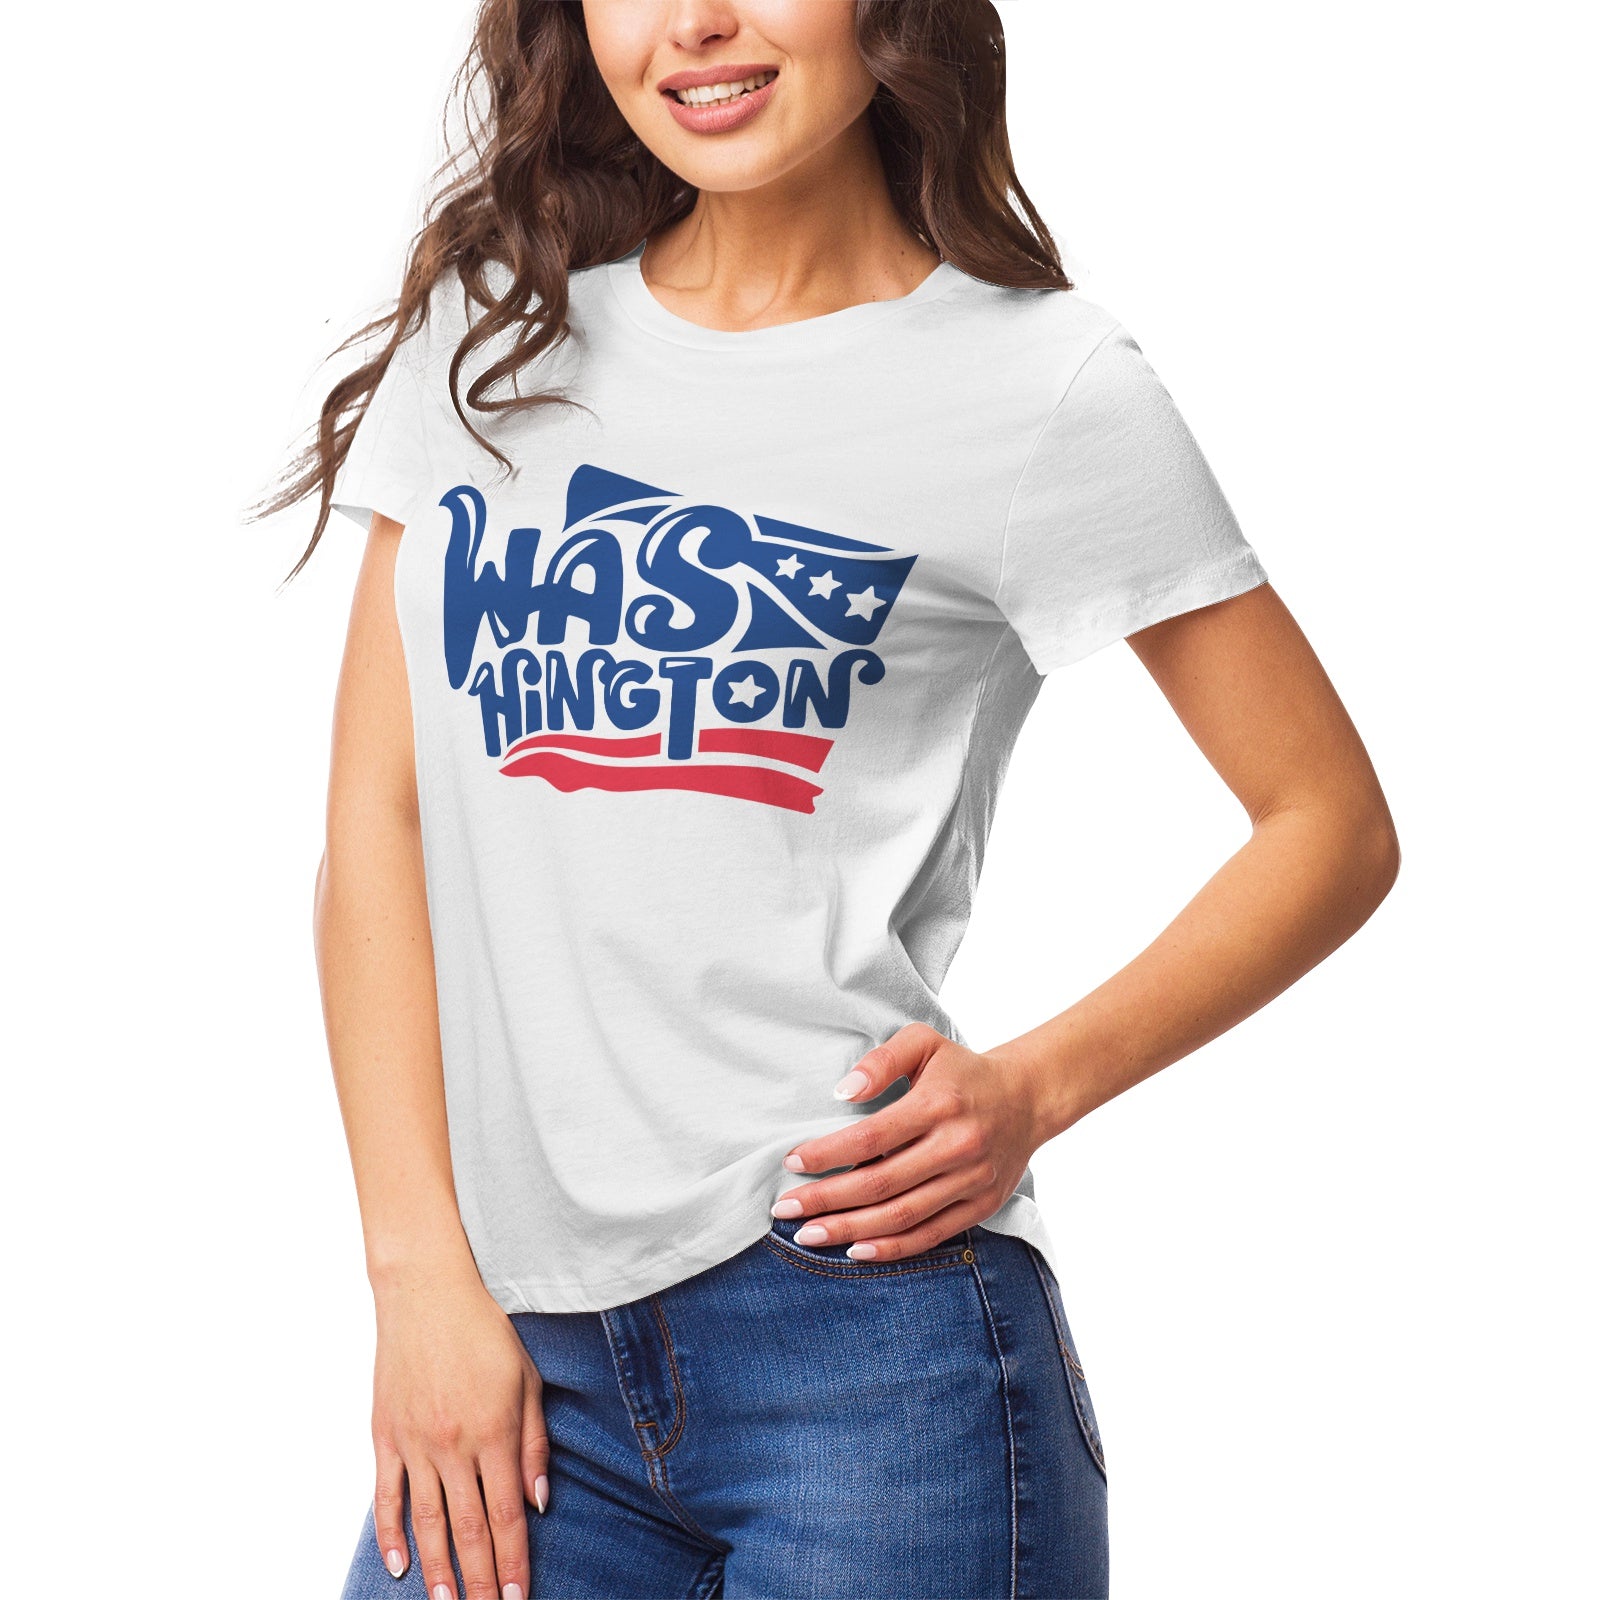 Fantasy 5 Women's Ultrasoft Pima Cotton T‑shirt - DromedarShop.com Online Boutique